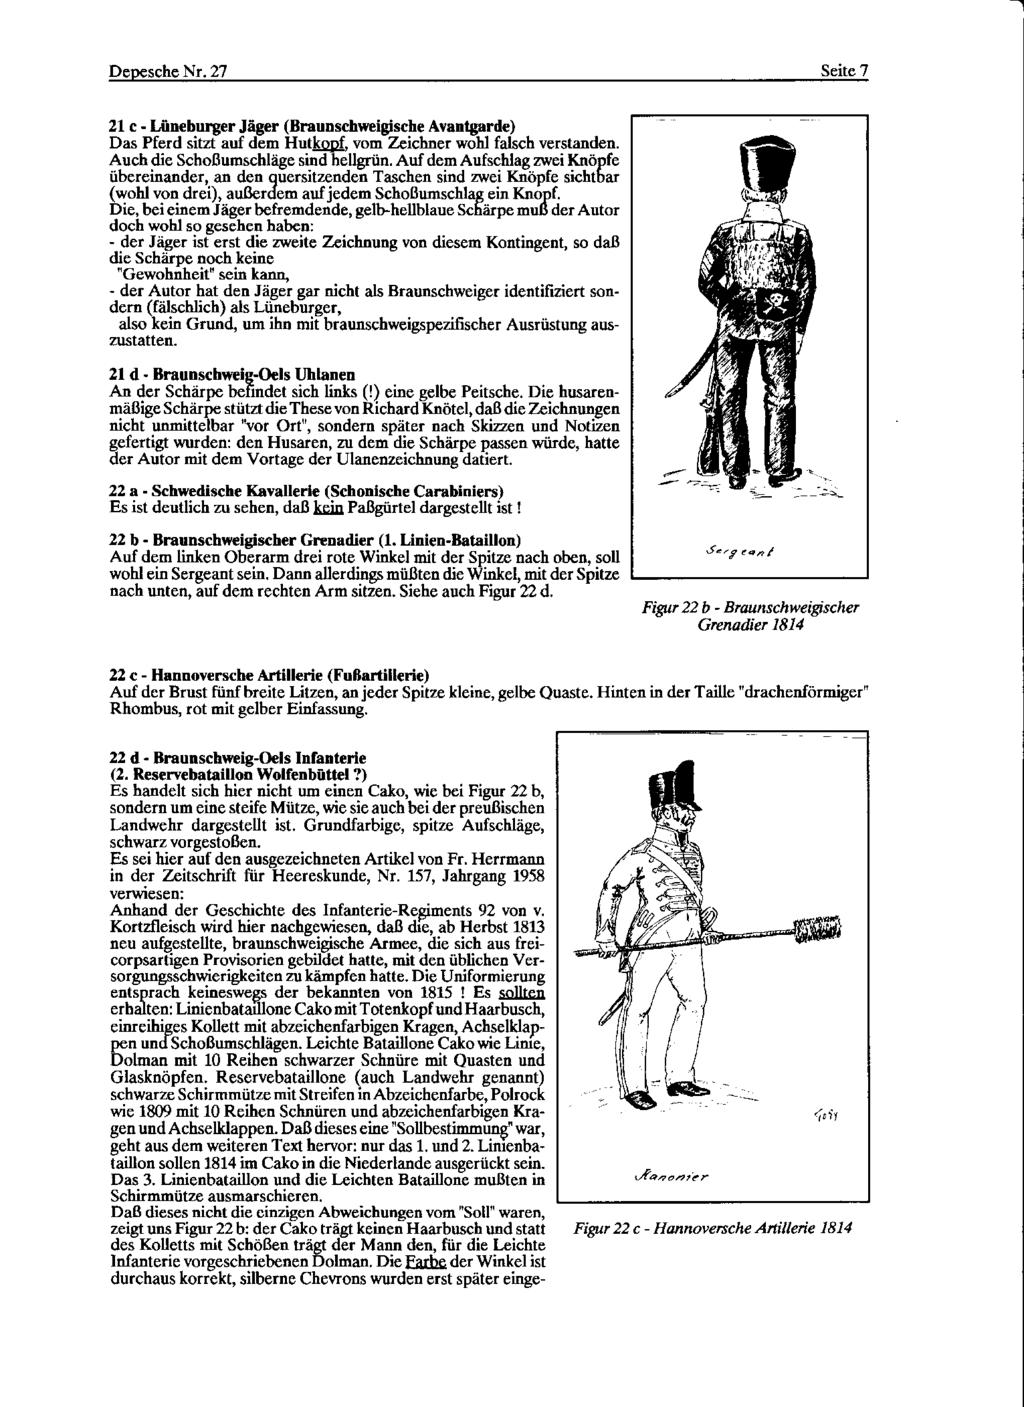 Depesche Nr. 27 Seite 7 21 c- Lüneburger Jäger (Braunschweigische Avantgarde) Das Pferd sitzt auf dem Hutlwl2f, vom Zeichner wohl falsch verstanden. Auch die Schoßumschläge sind hellgrün.